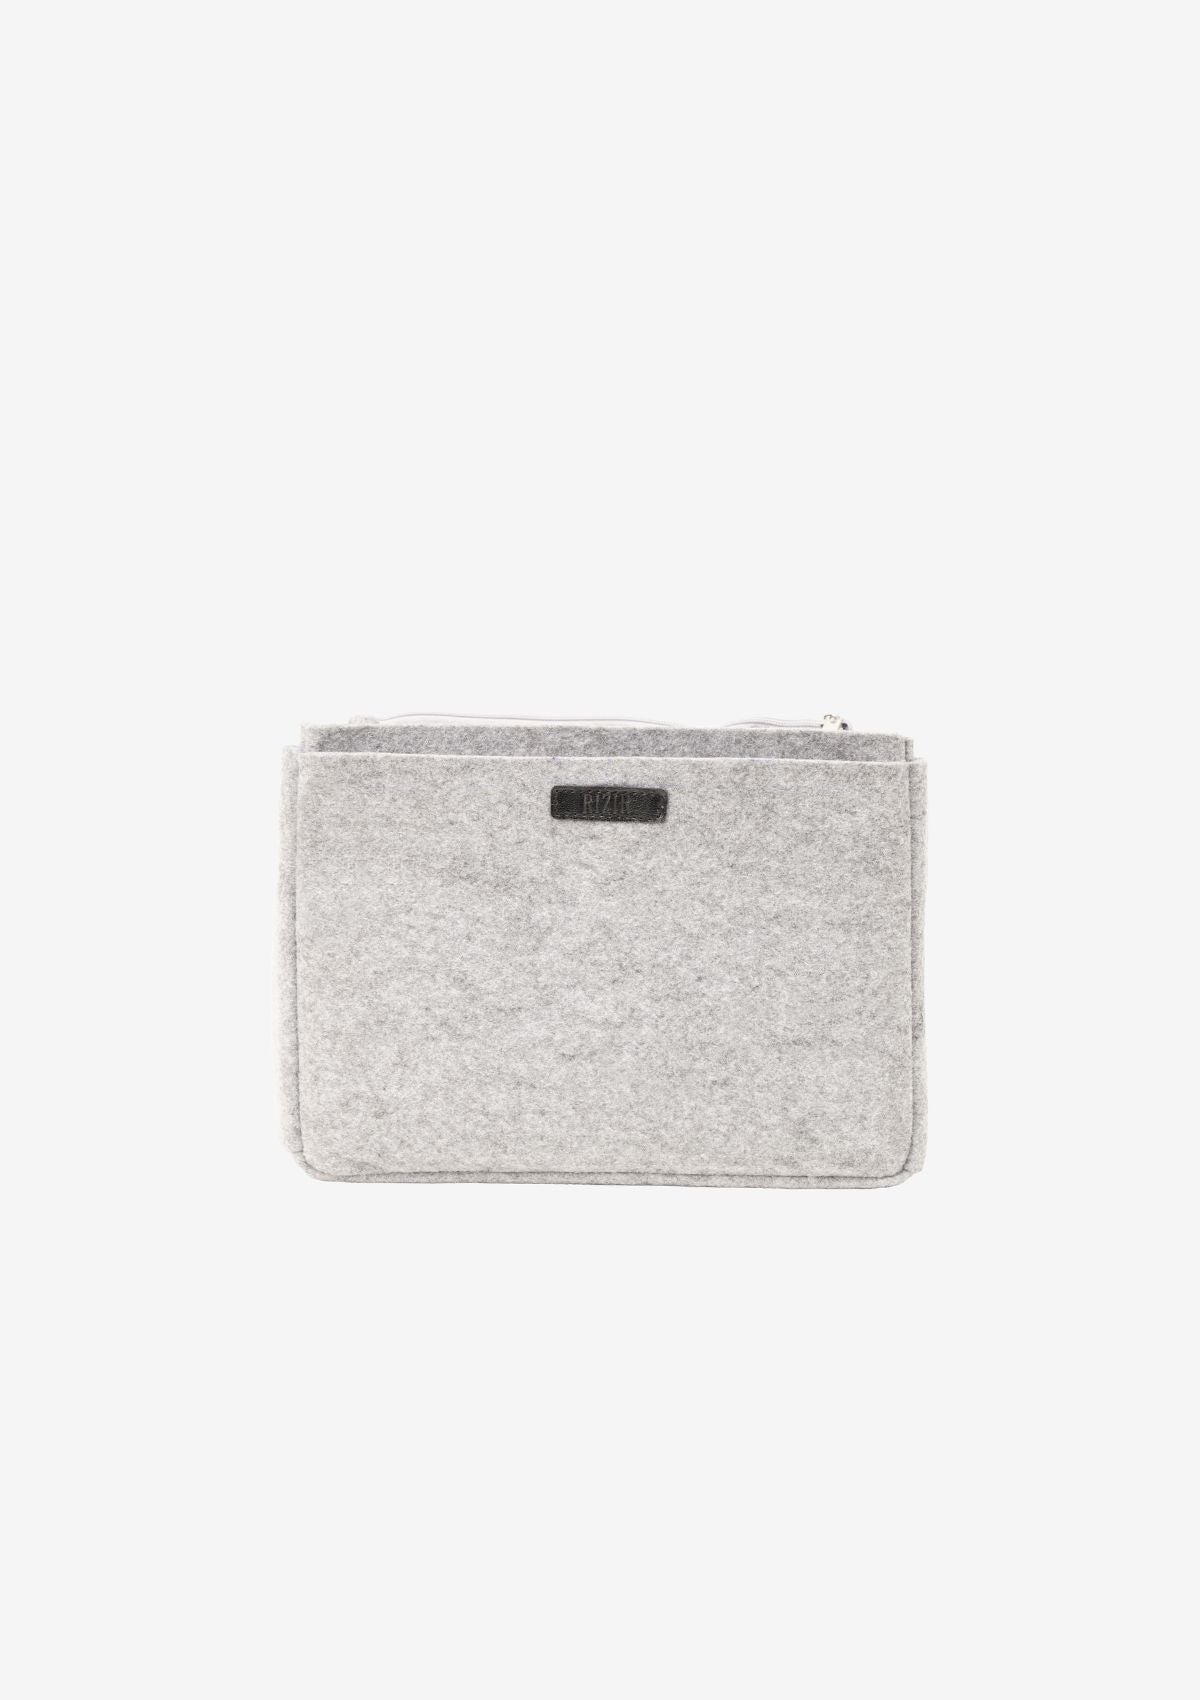 Grey Felt Handbag Organizer - Rizir